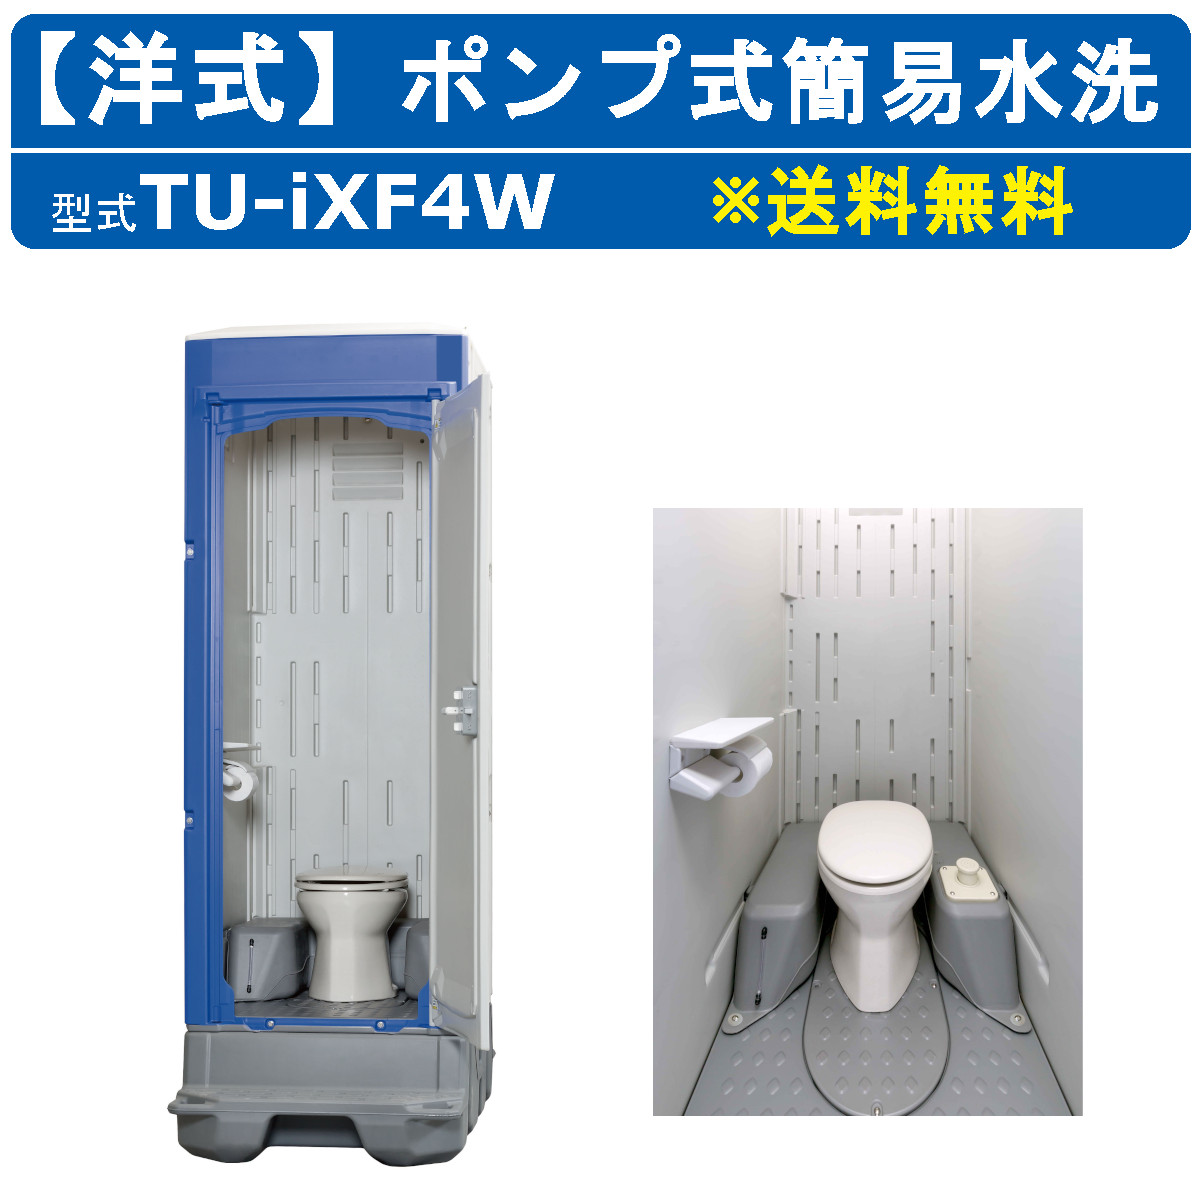 仮設トイレ 簡易水洗式 洋式 HG - 工具、DIY用品